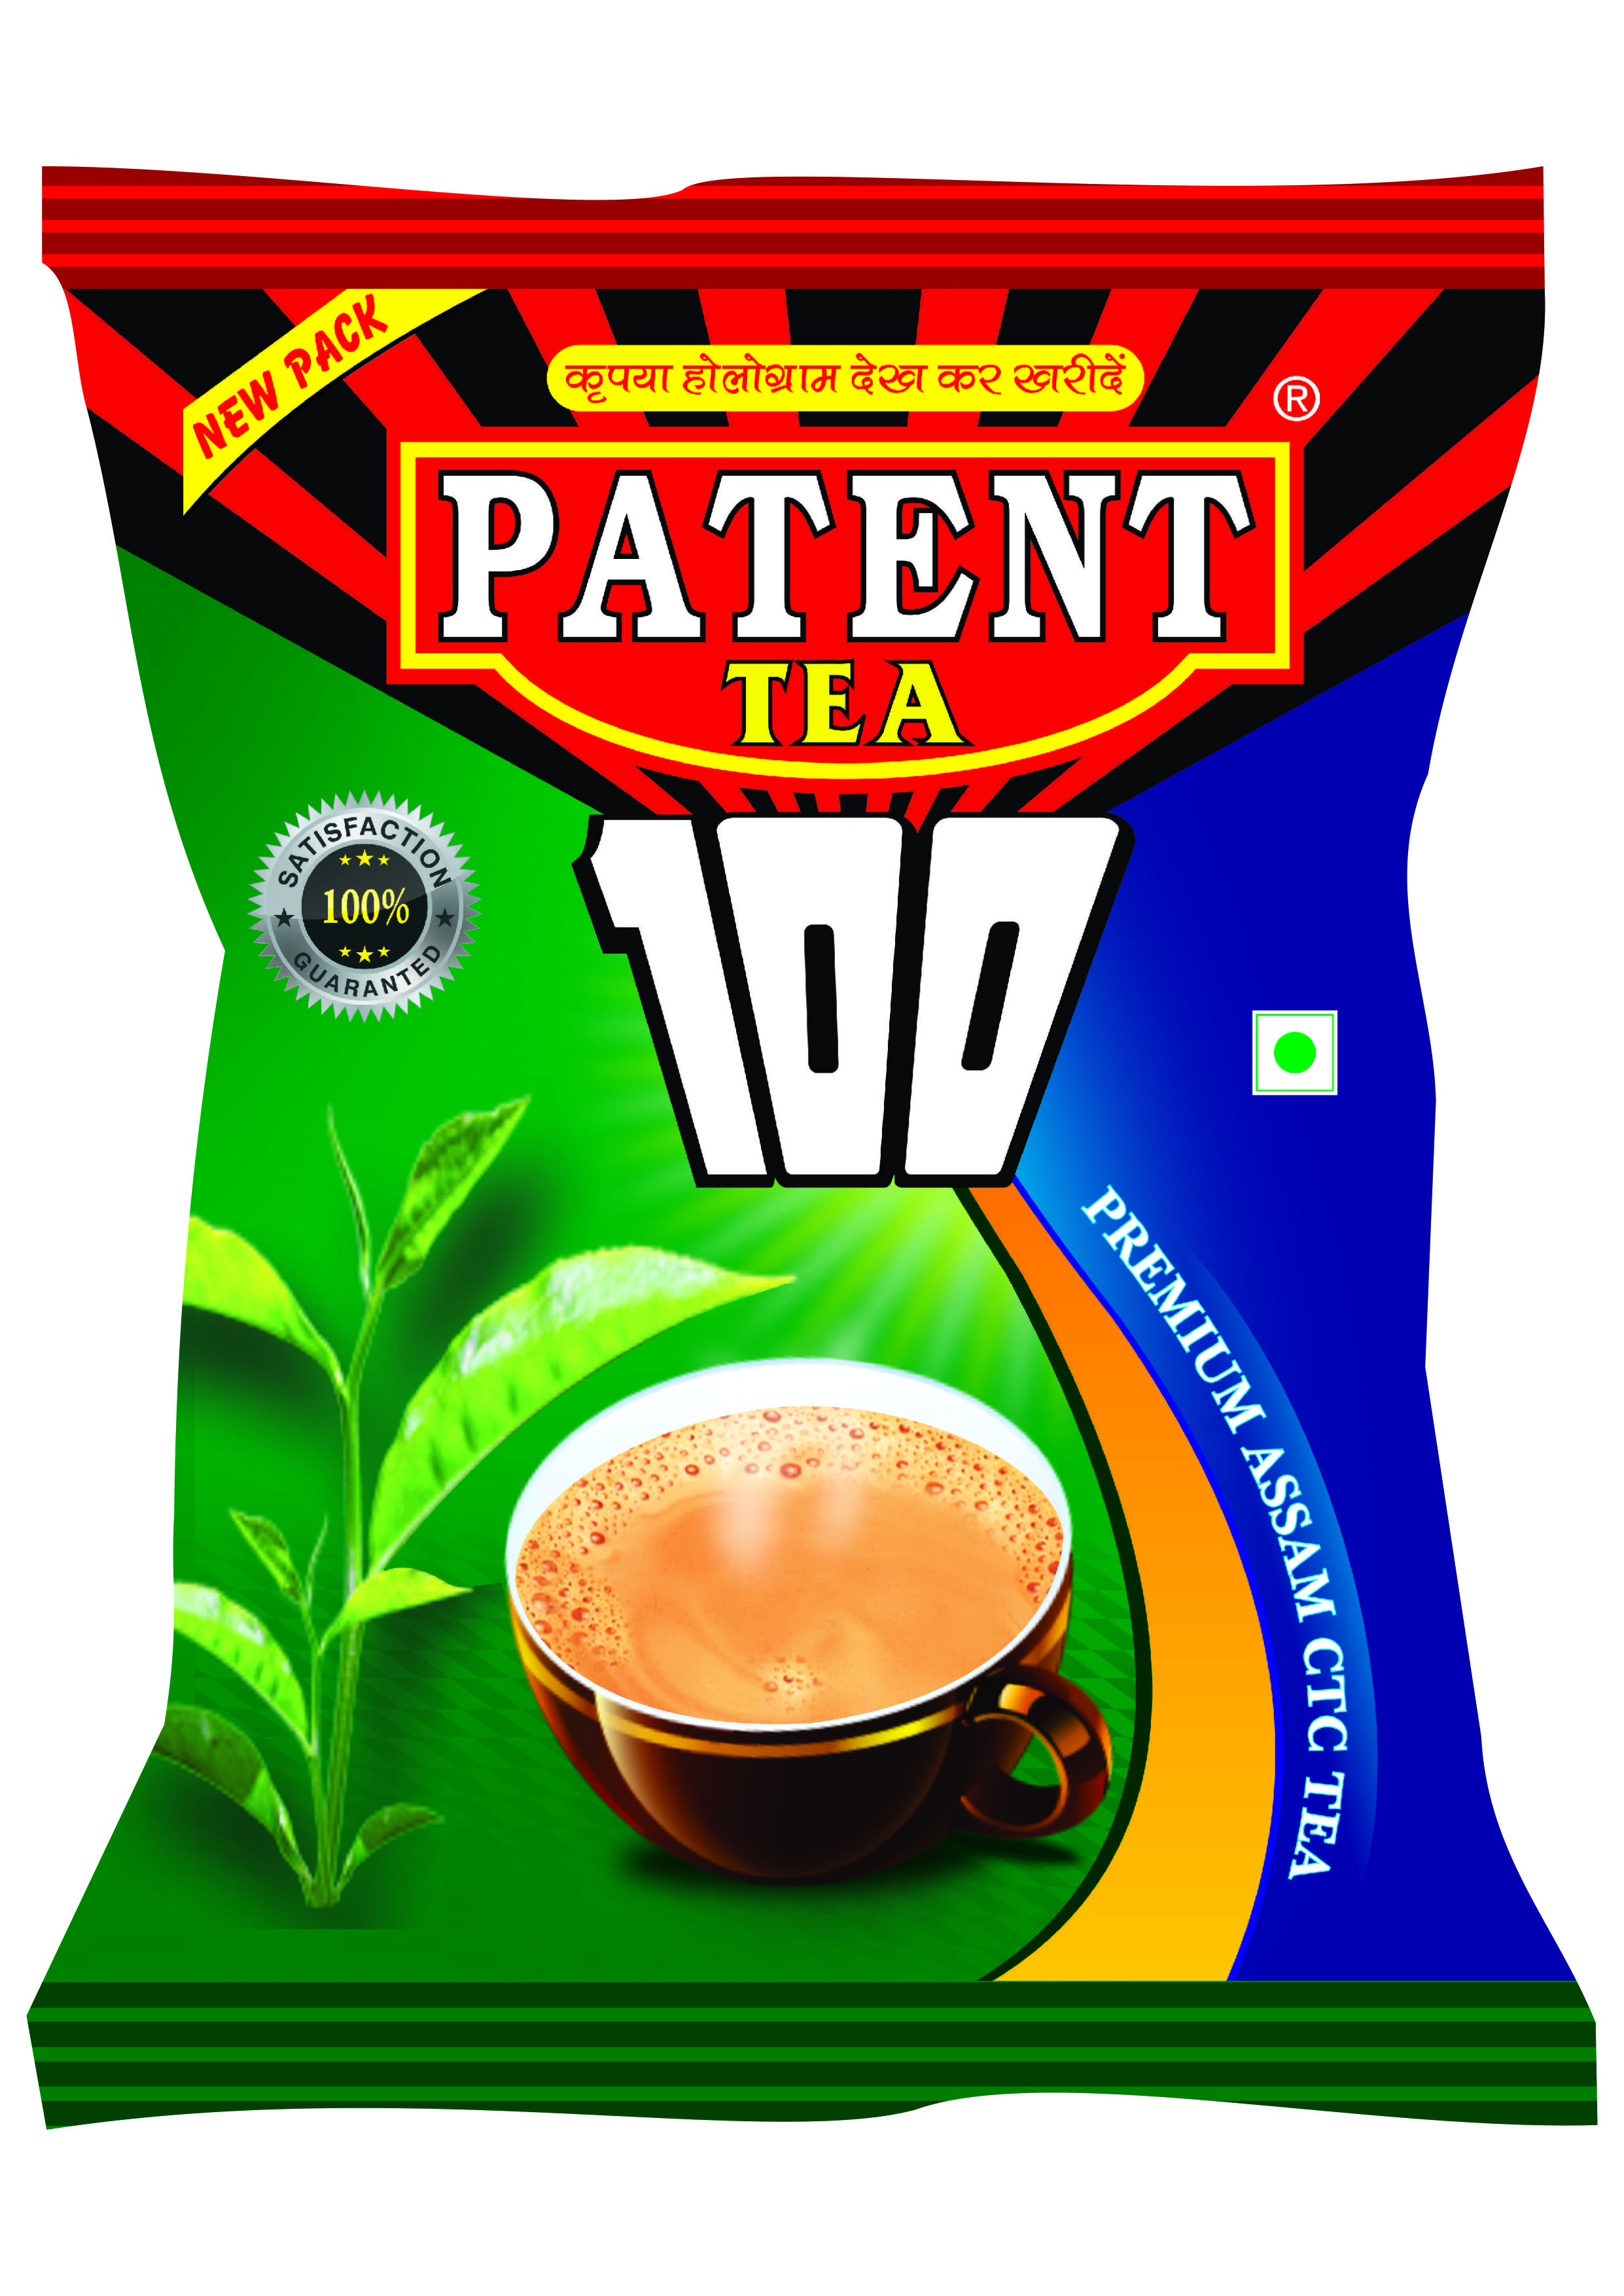 Patent Tea Gold